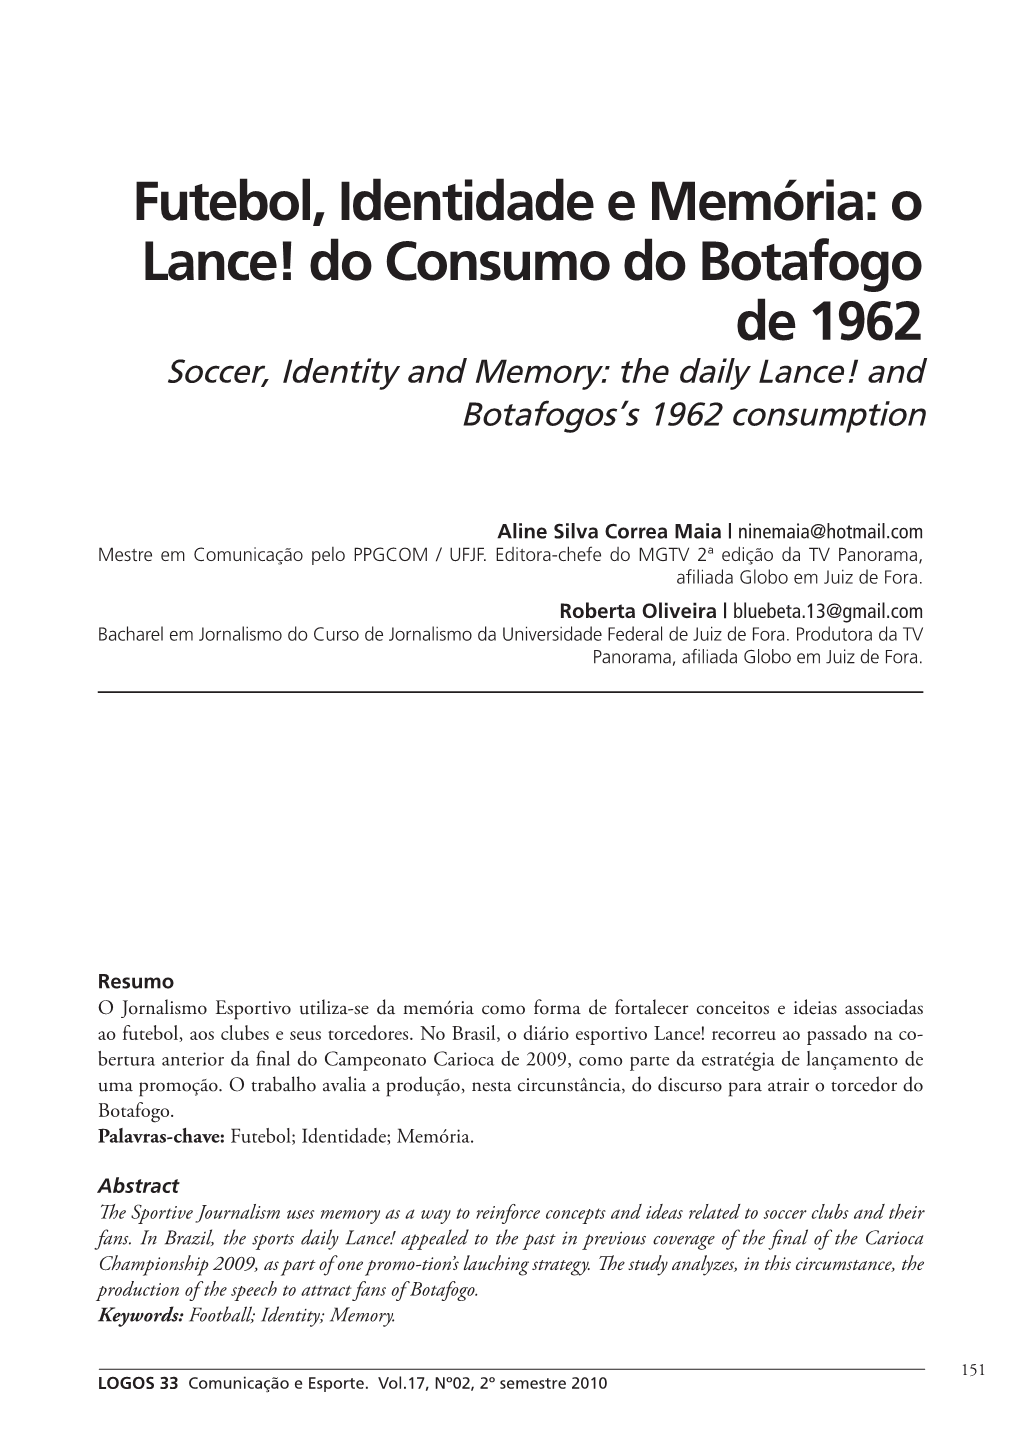 Futebol, Identidade E Memória: O Lance! Do Consumo Do Botafogo De 1962 Soccer, Identity and Memory: the Daily Lance! and Botafogos’S 1962 Consumption